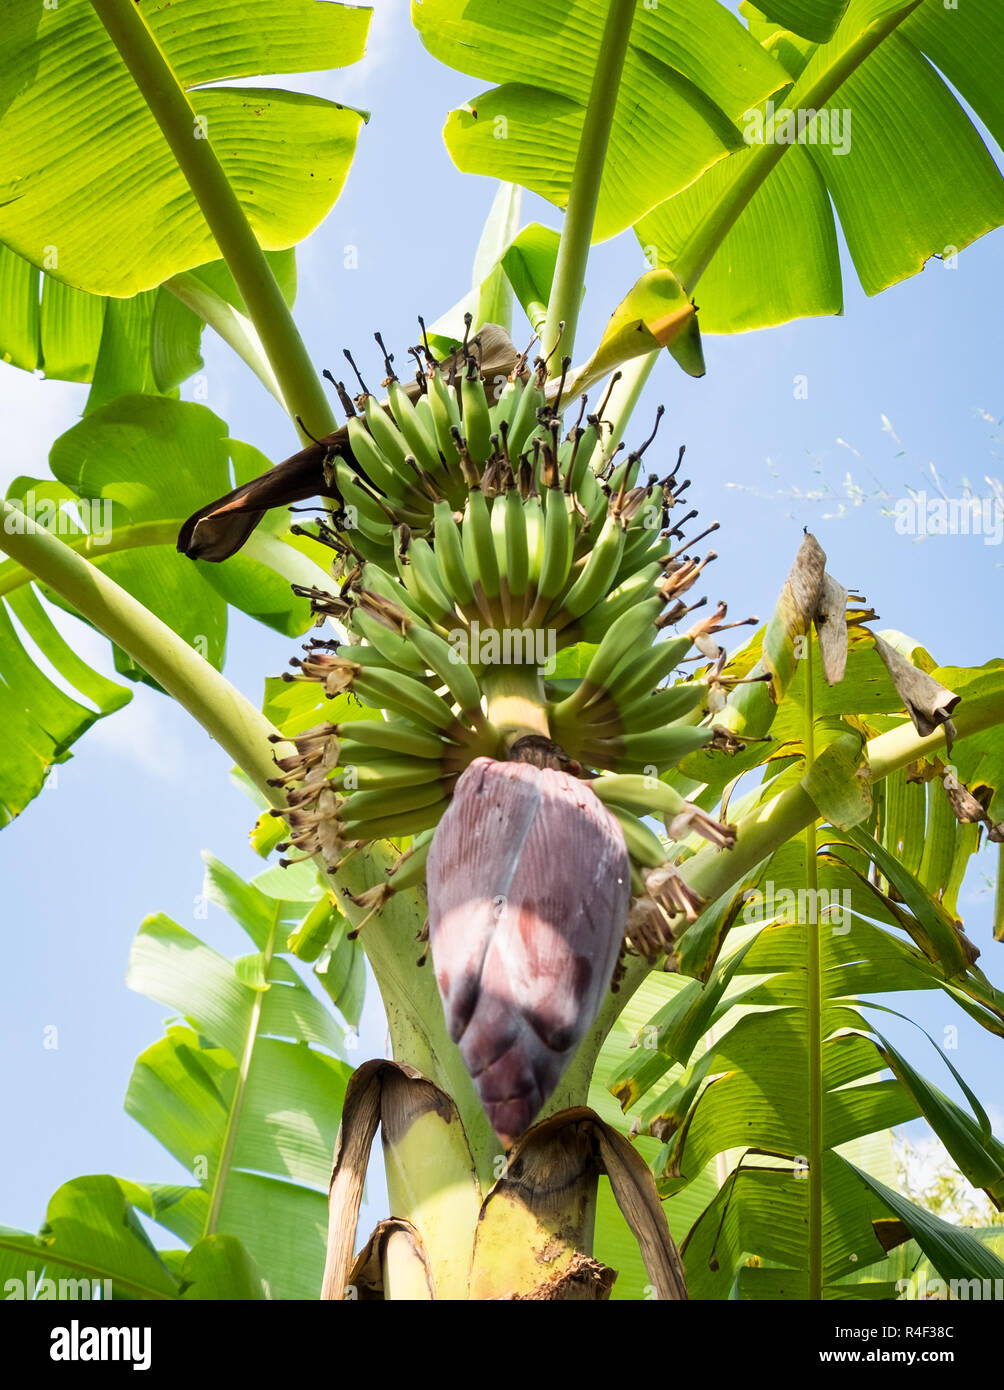 Los plátanos crecen en un árbol cerca de Can Tho, Vietnam Foto de stock